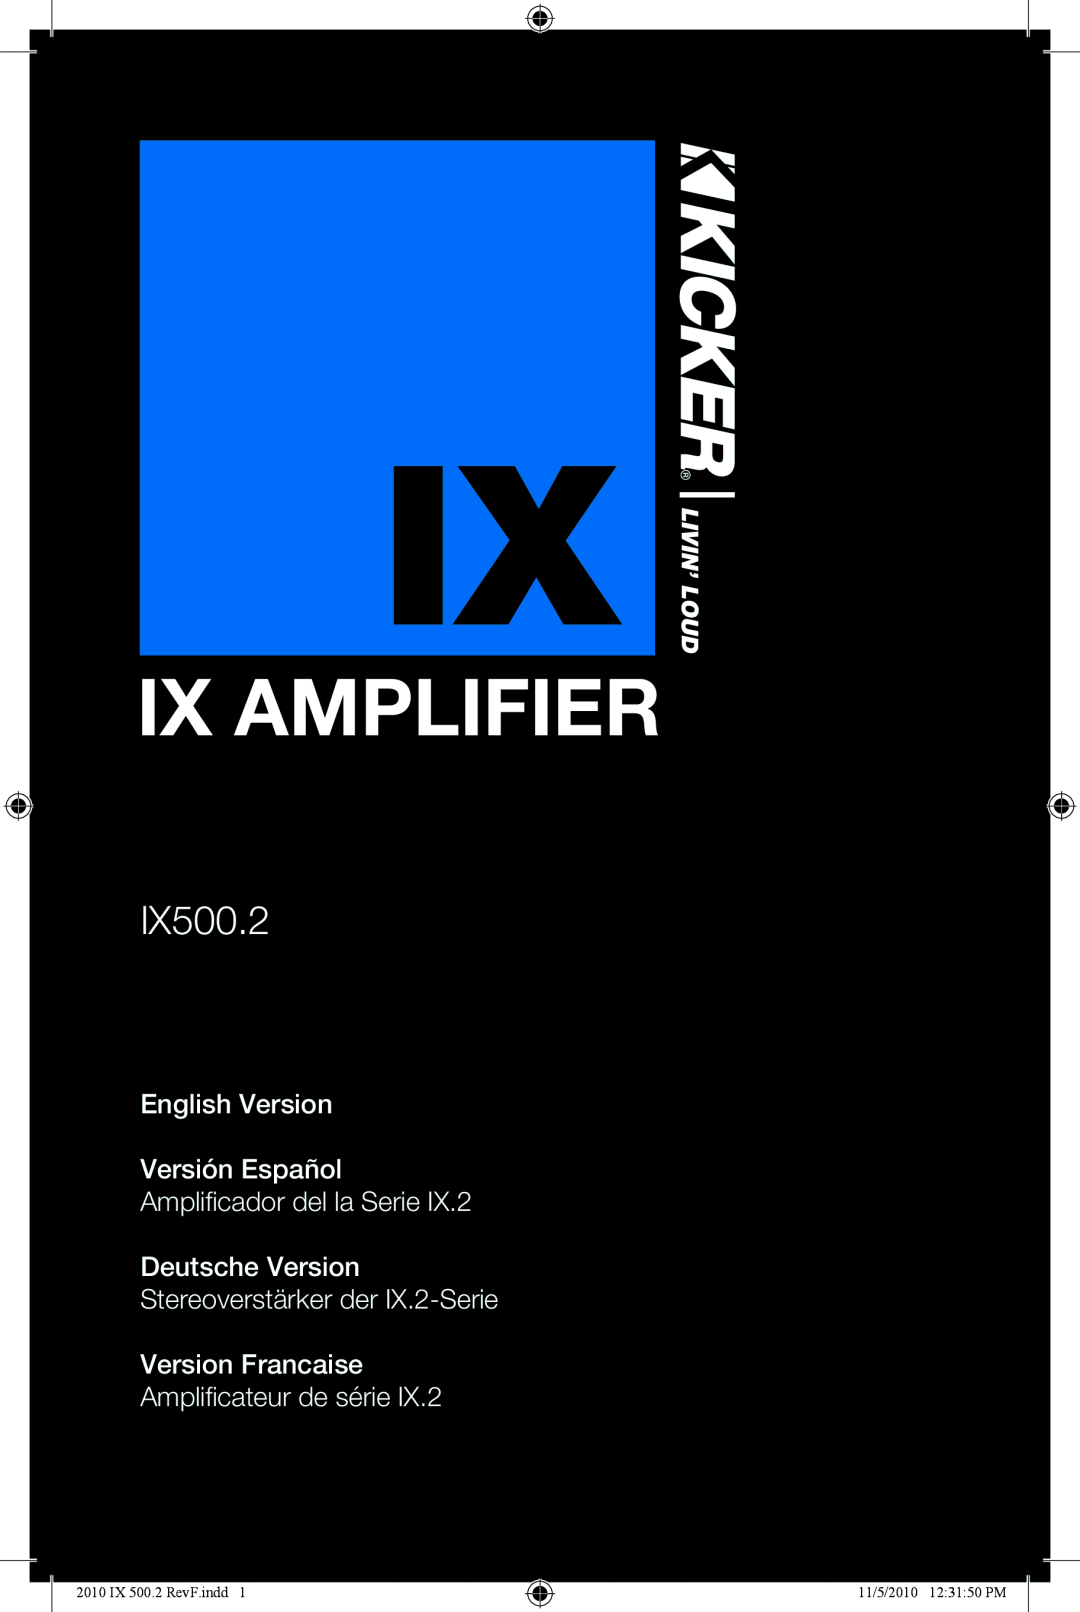 Kicker IX500.2 manual Ix Amplifier, English Version Versión Español, Amplificador del la Serie Deutsche Version 